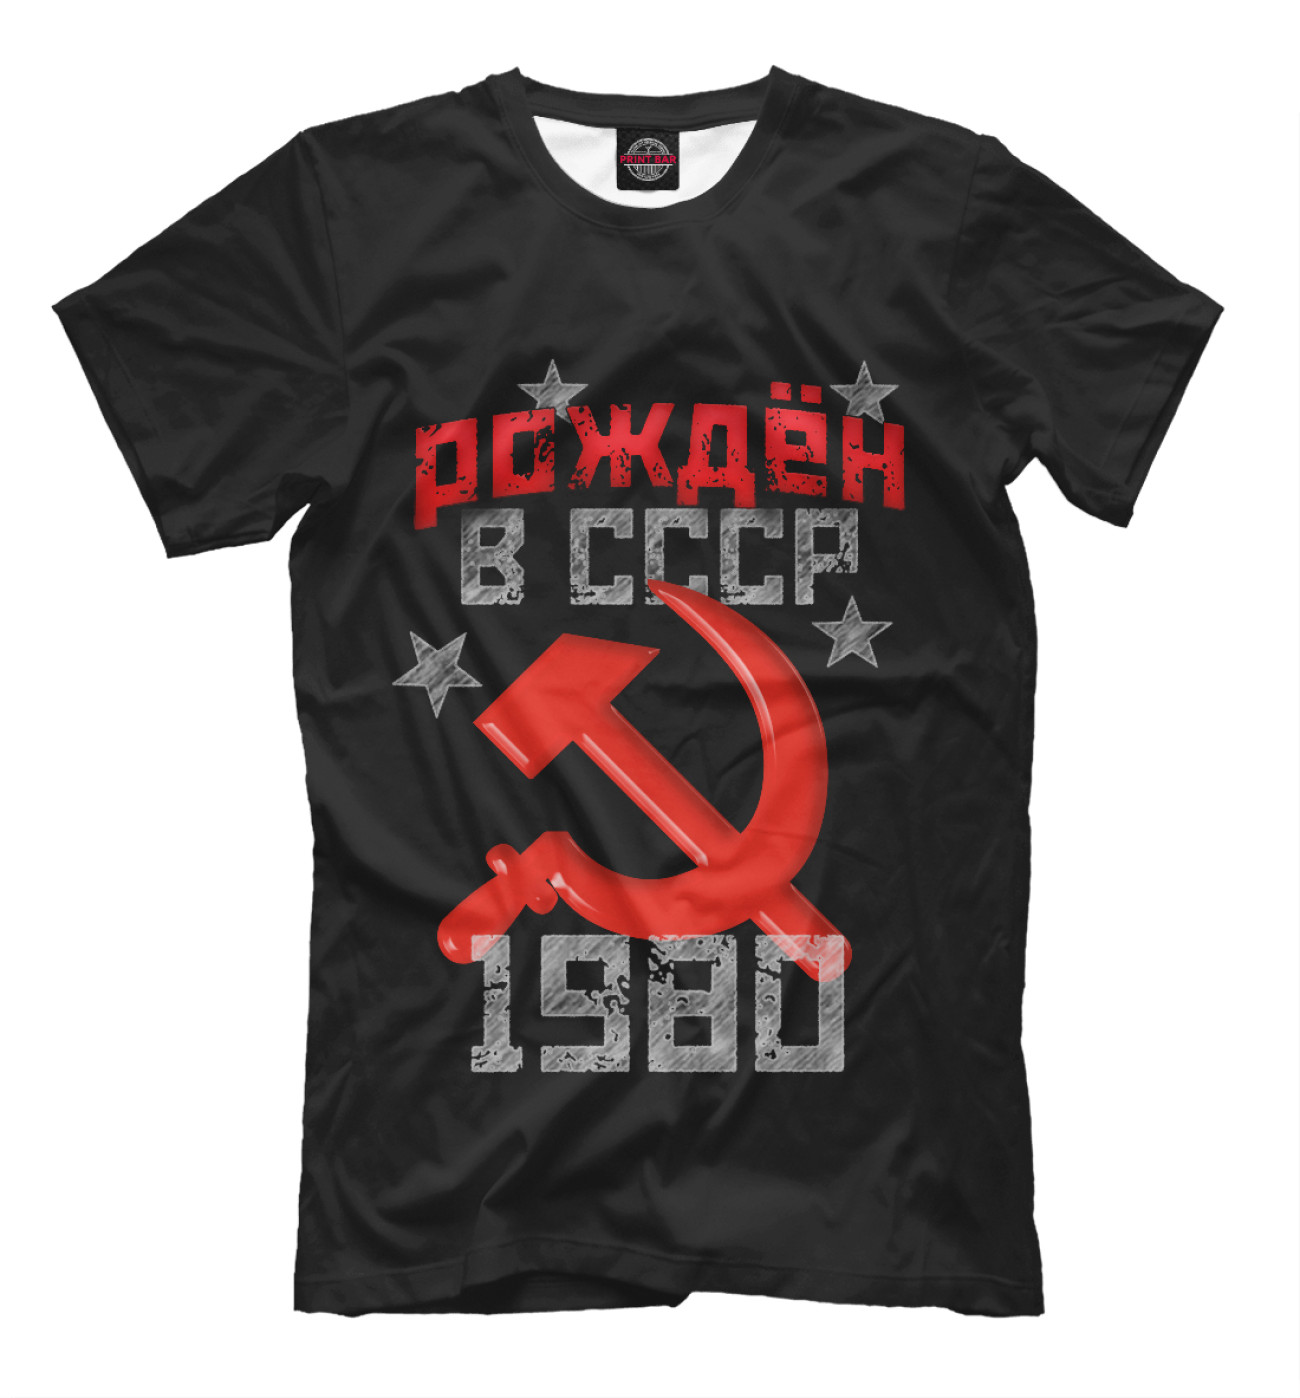 Мужская Футболка Рожден в СССР 1980, артикул: DVH-713659-fut-2